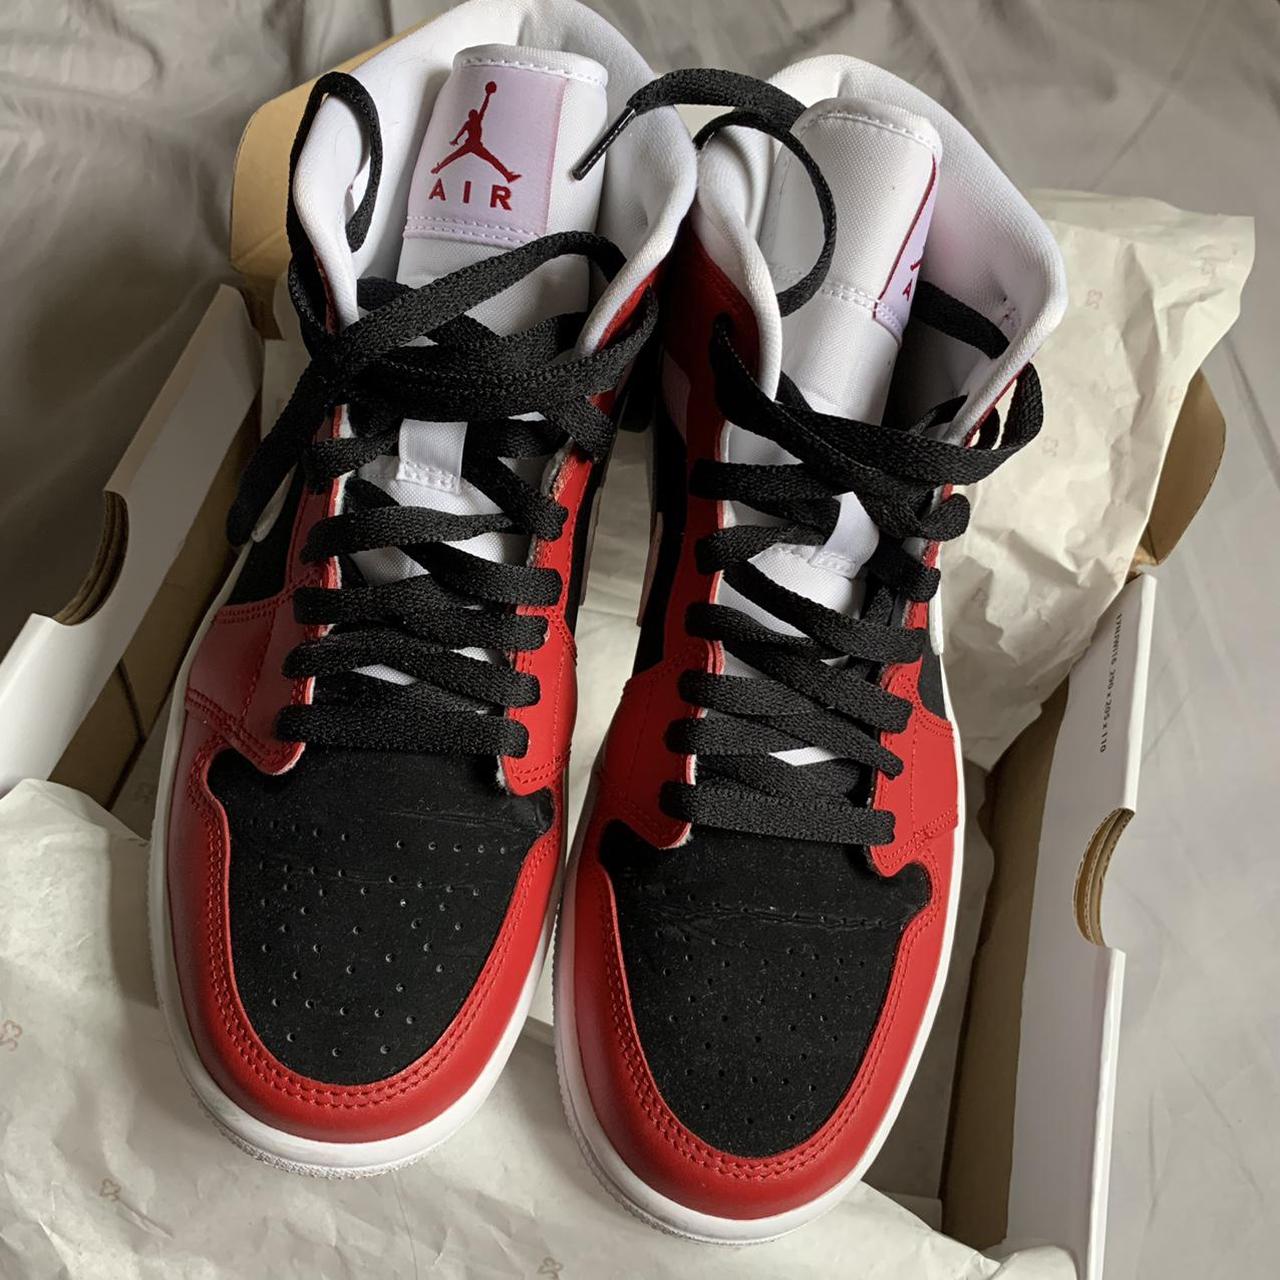 Nike Air Jordan 1 in Gym Red/White Black colourway.... - Depop